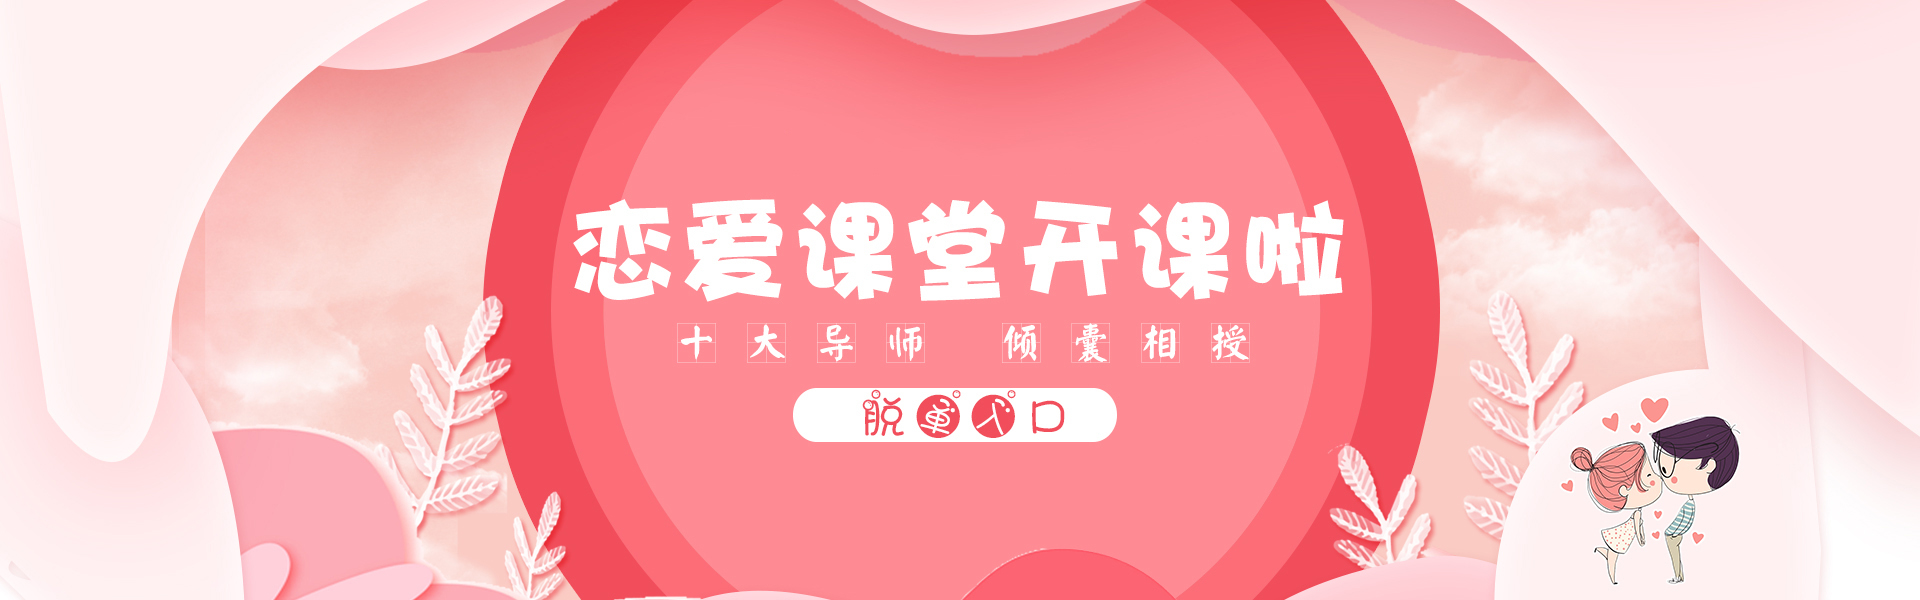 潍坊江南文化传播有限公司致力于解决恋爱情感问题，为客户提供恋爱聊天技巧、相亲攻略、表白技巧、快速脱单技巧等感情服务。